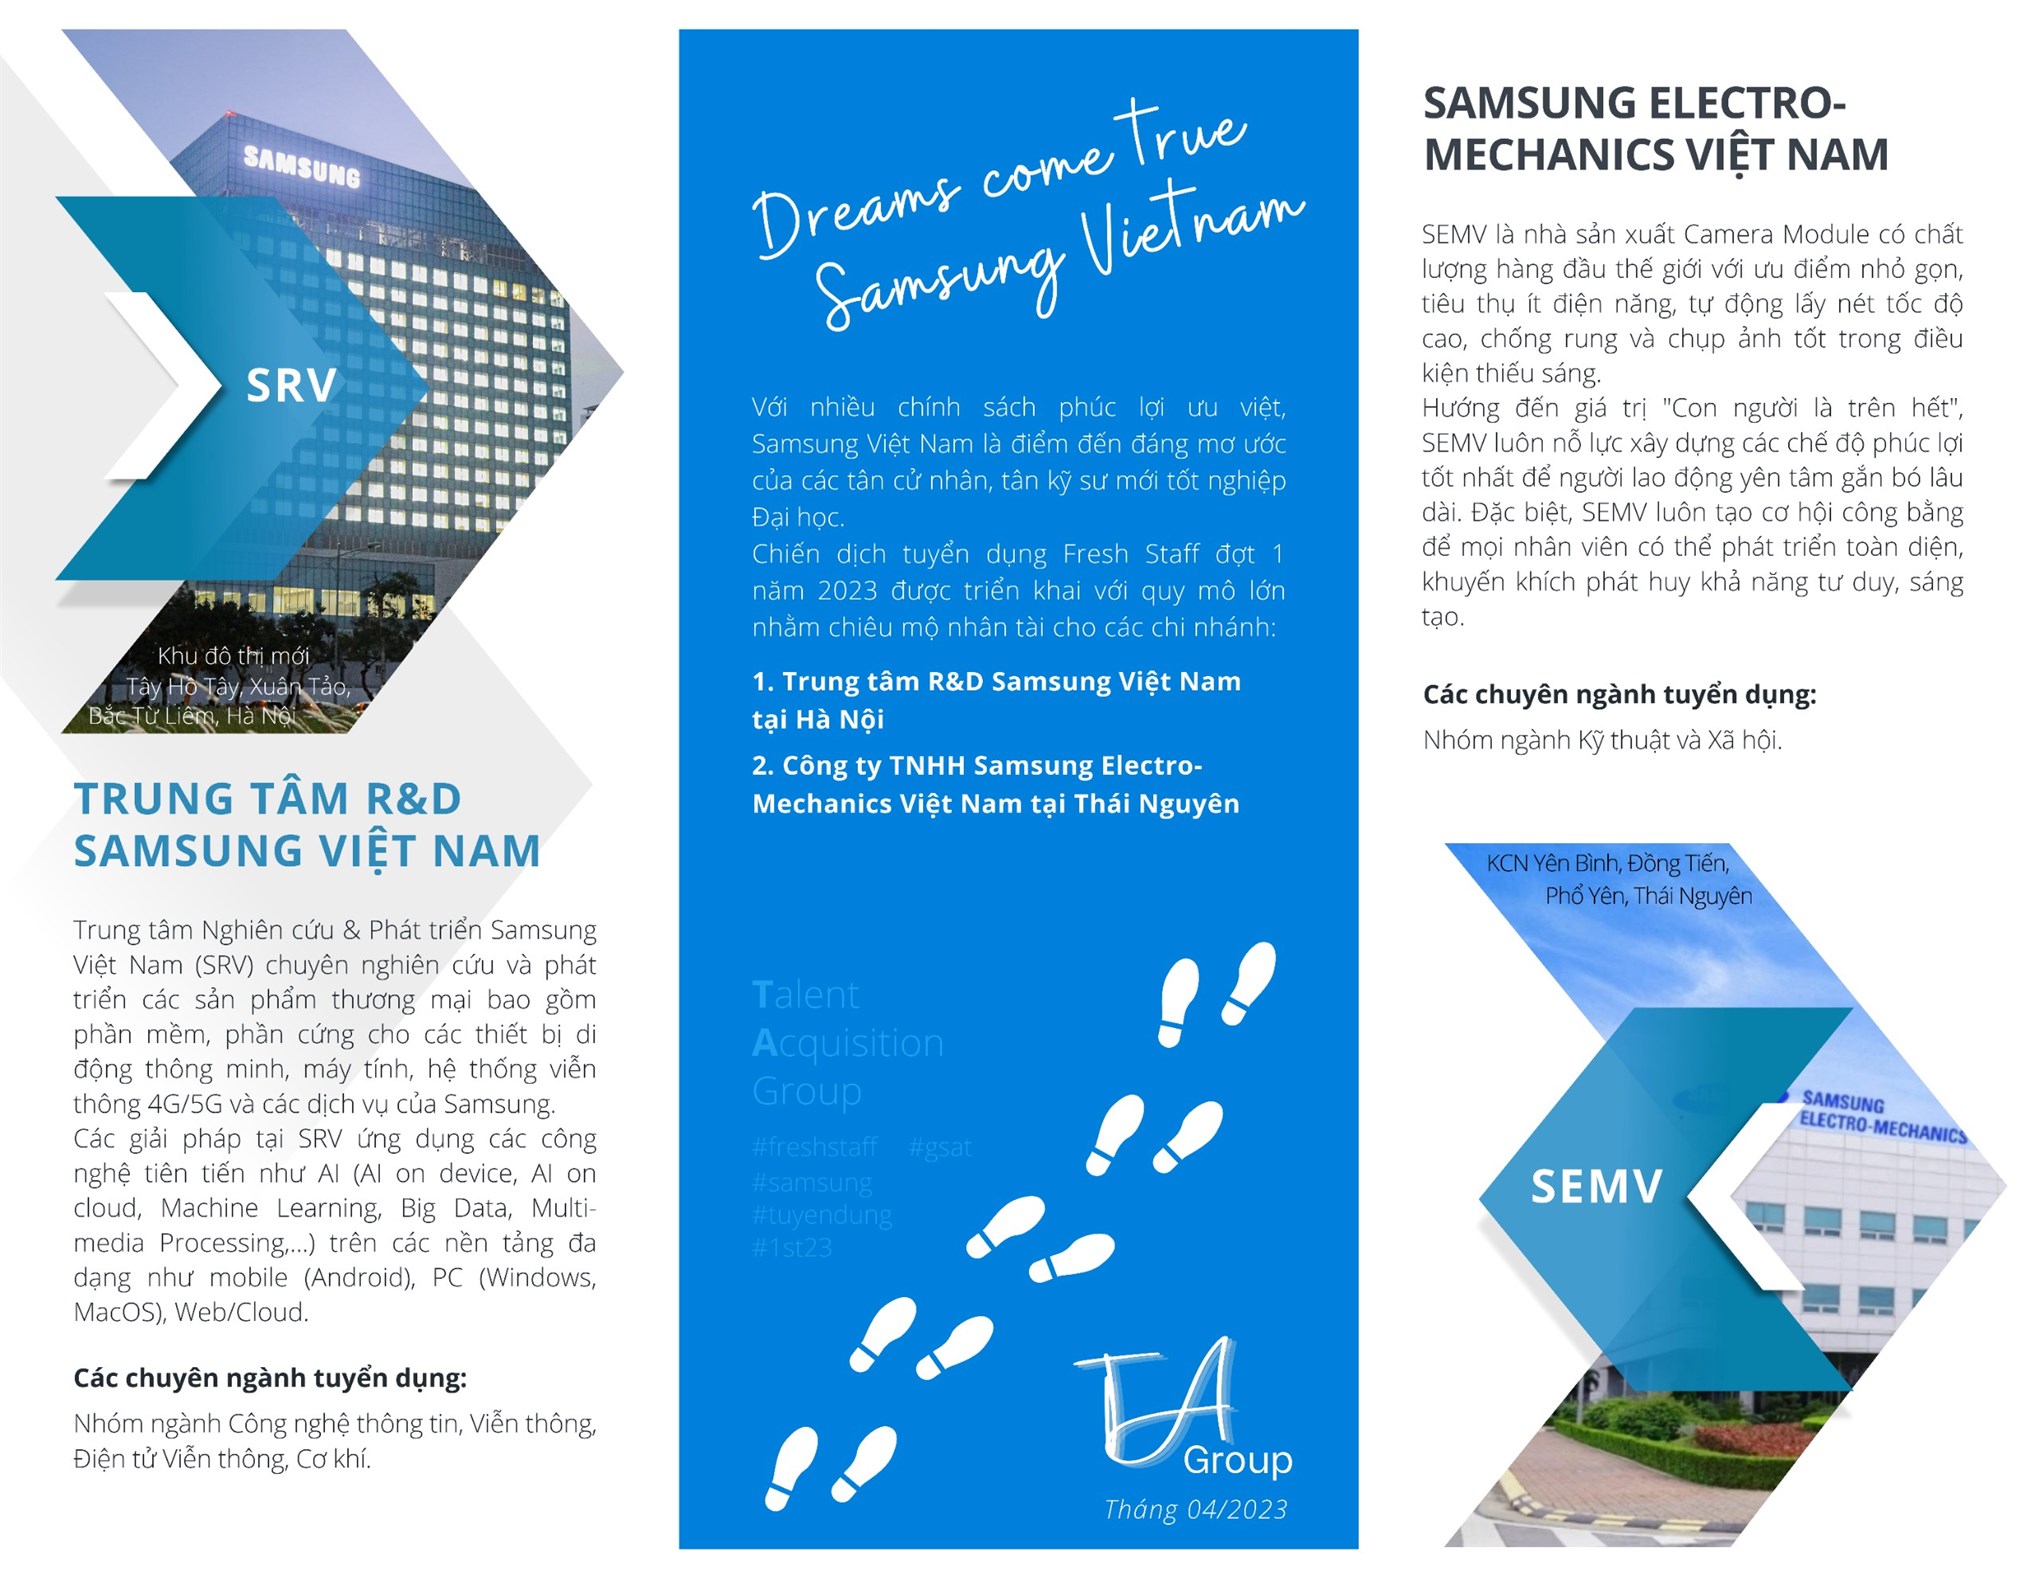 Hội thảo việc làm, hướng nghiệp của Công ty TNHH Samsung Electronics Việt Nam 2023 dành cho Sinh viên trình độ Đại học